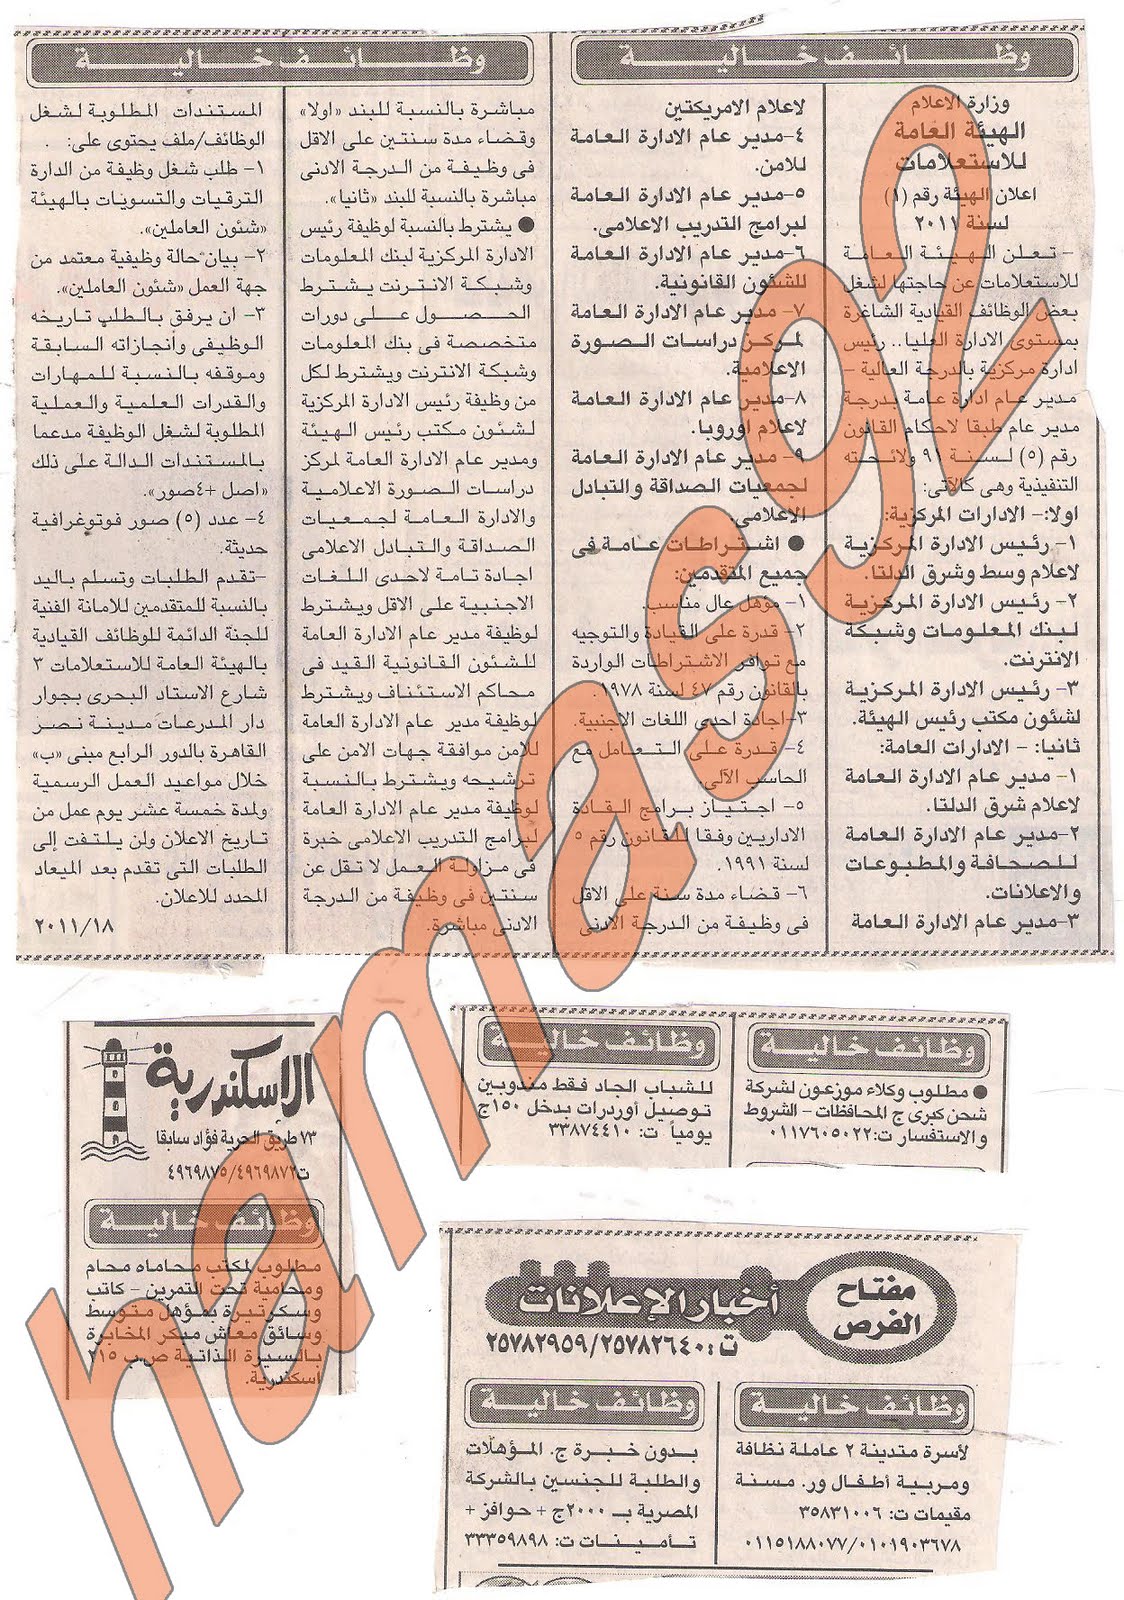 وظائف خاليه من جريده الاخبار - الاحد 31 يوليو 2011 Picture+001